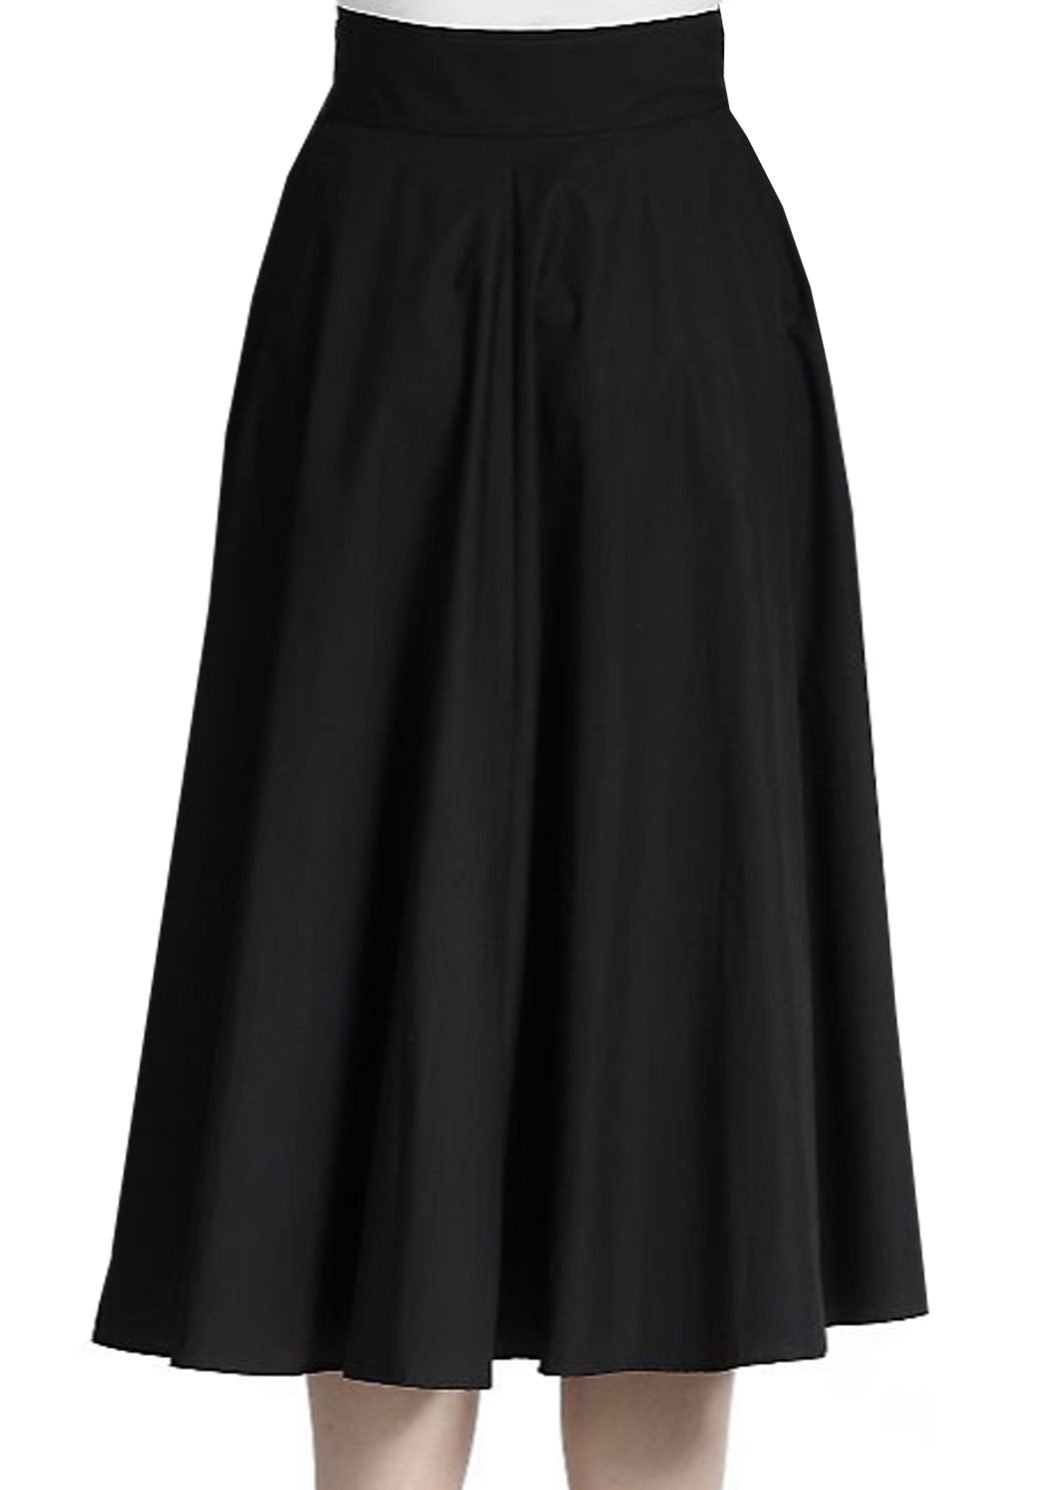 Black Flared Panelled Skirt, Custom Fit, Handmade, Fully Lined